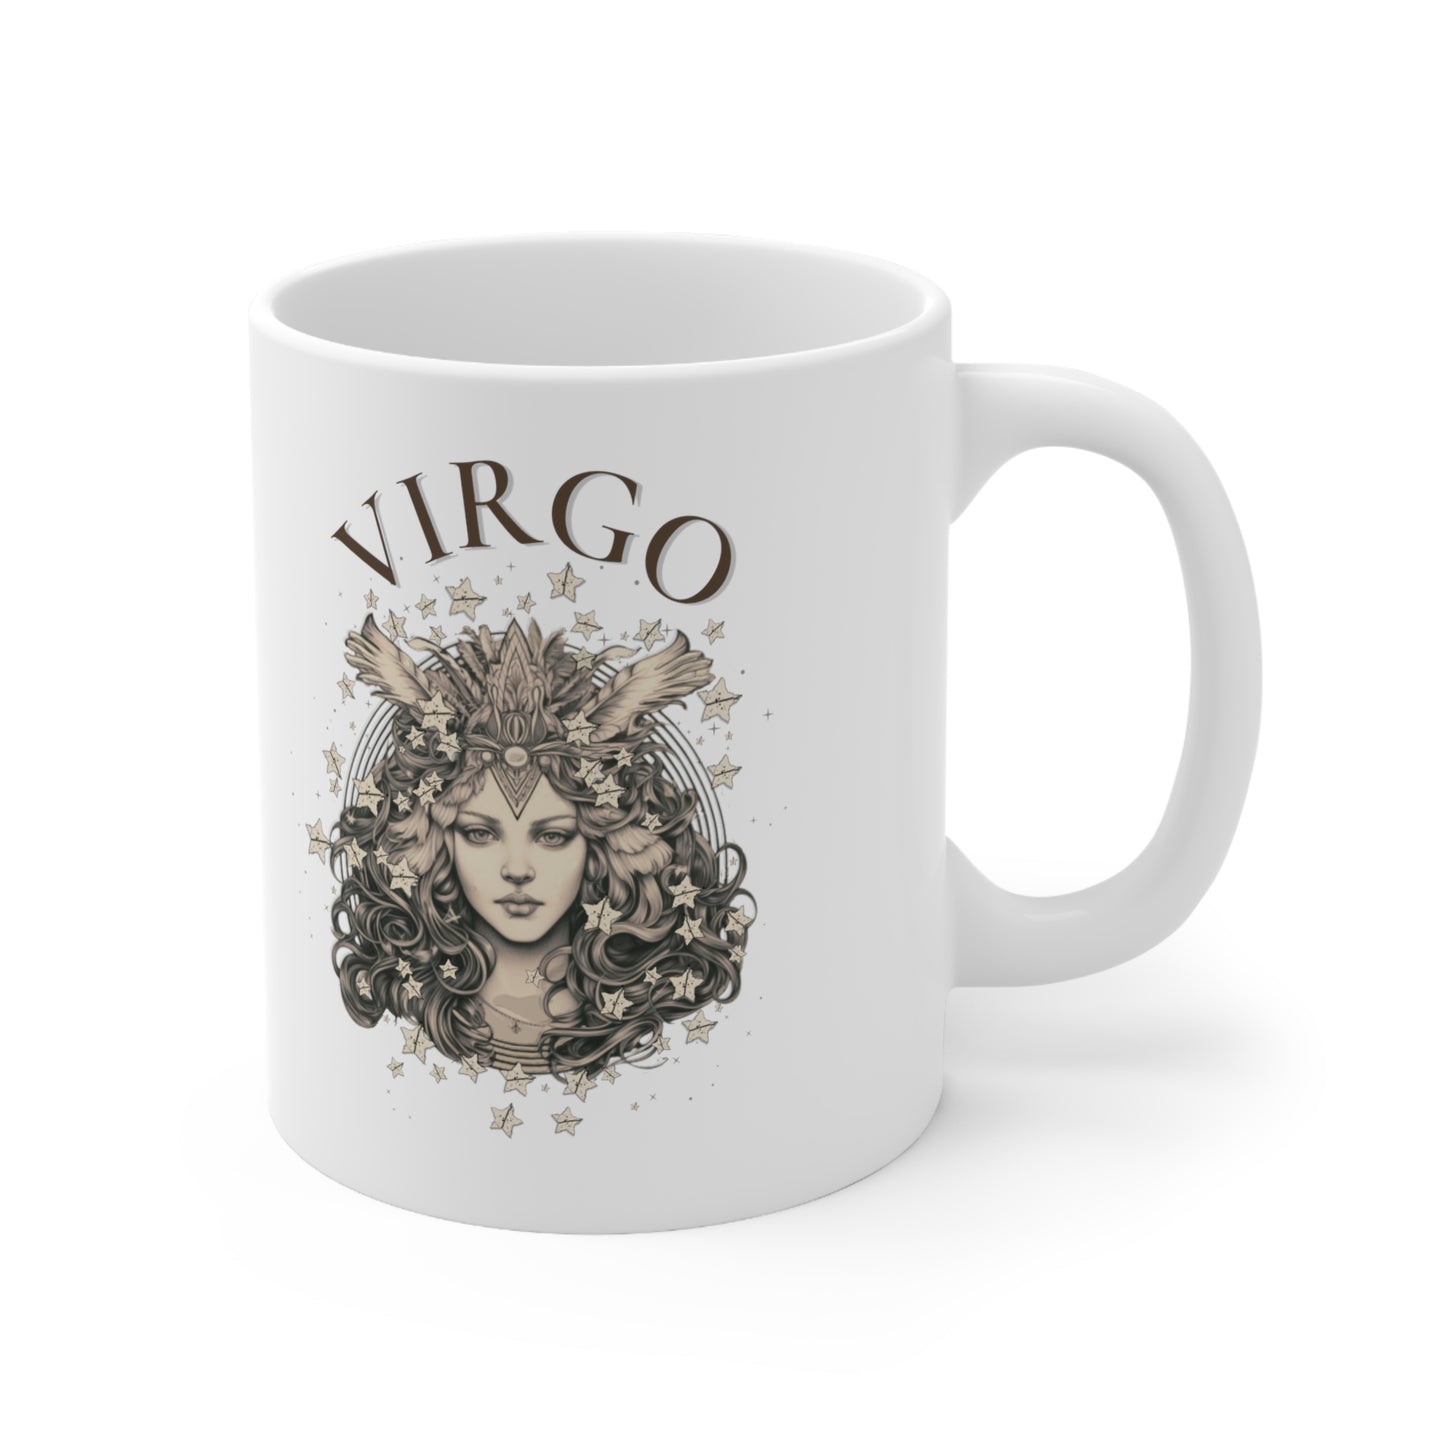 Virgo Zodiac Sign Mug - 2 Side Pencil Line Art